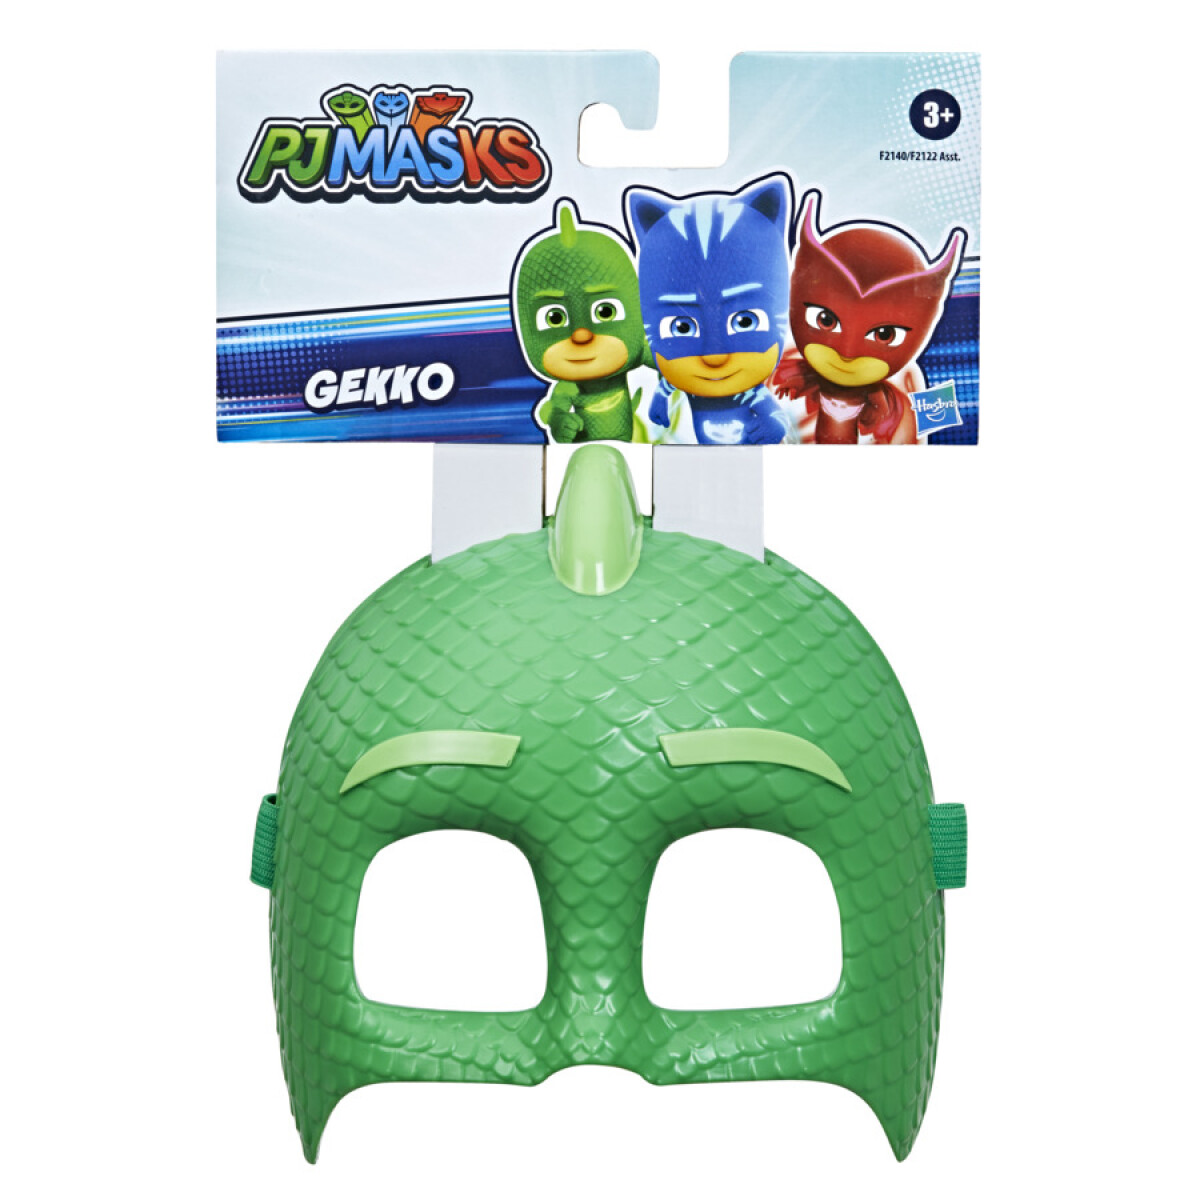 Máscara de Héroe Pj Masks Gecko - 001 